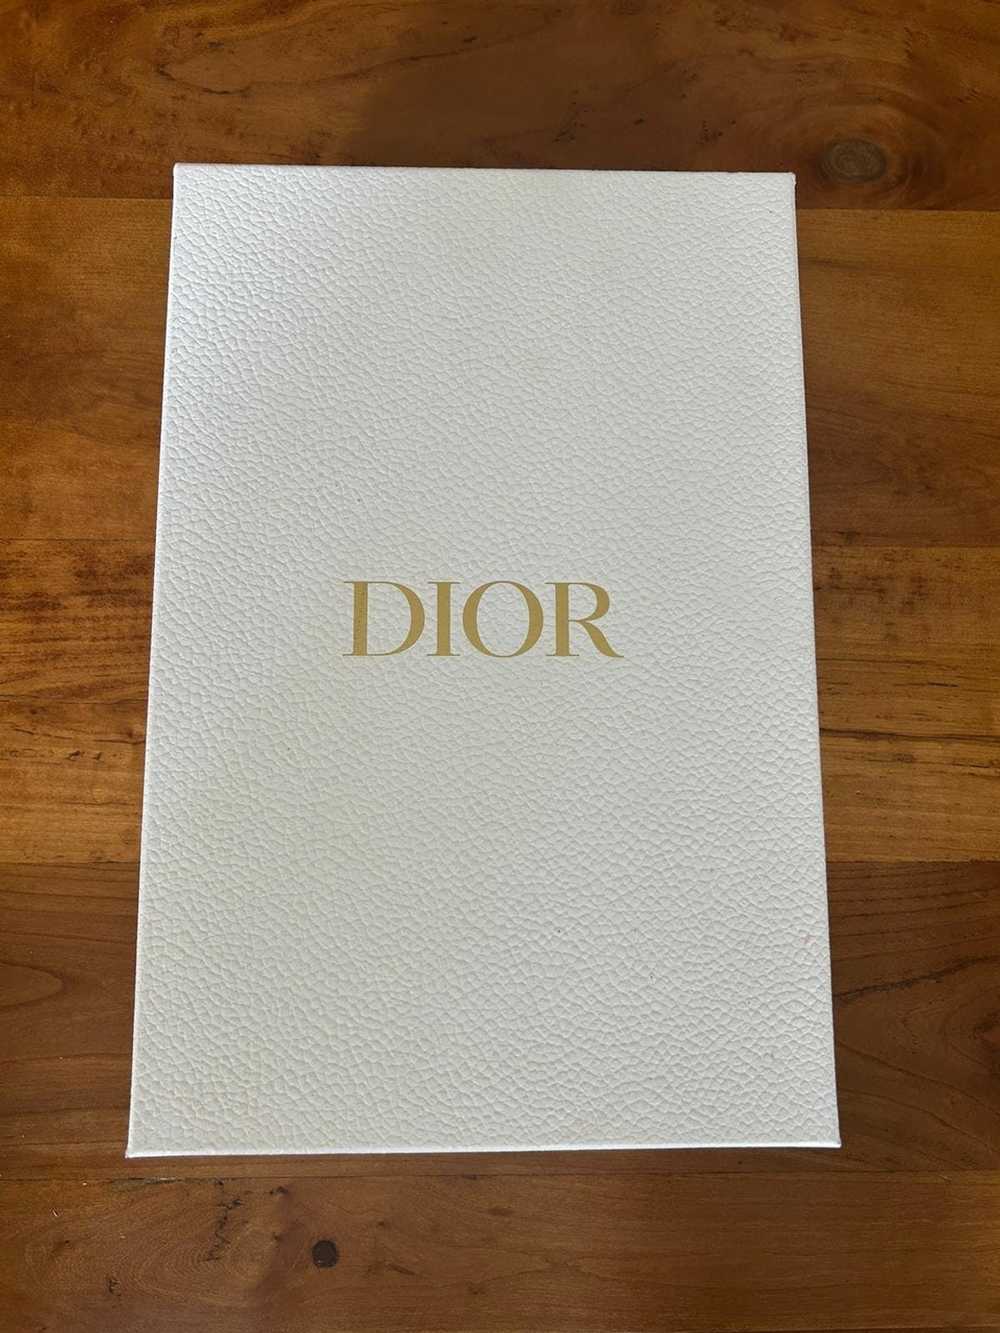 2022 Authentic Dior small gift box (empty)